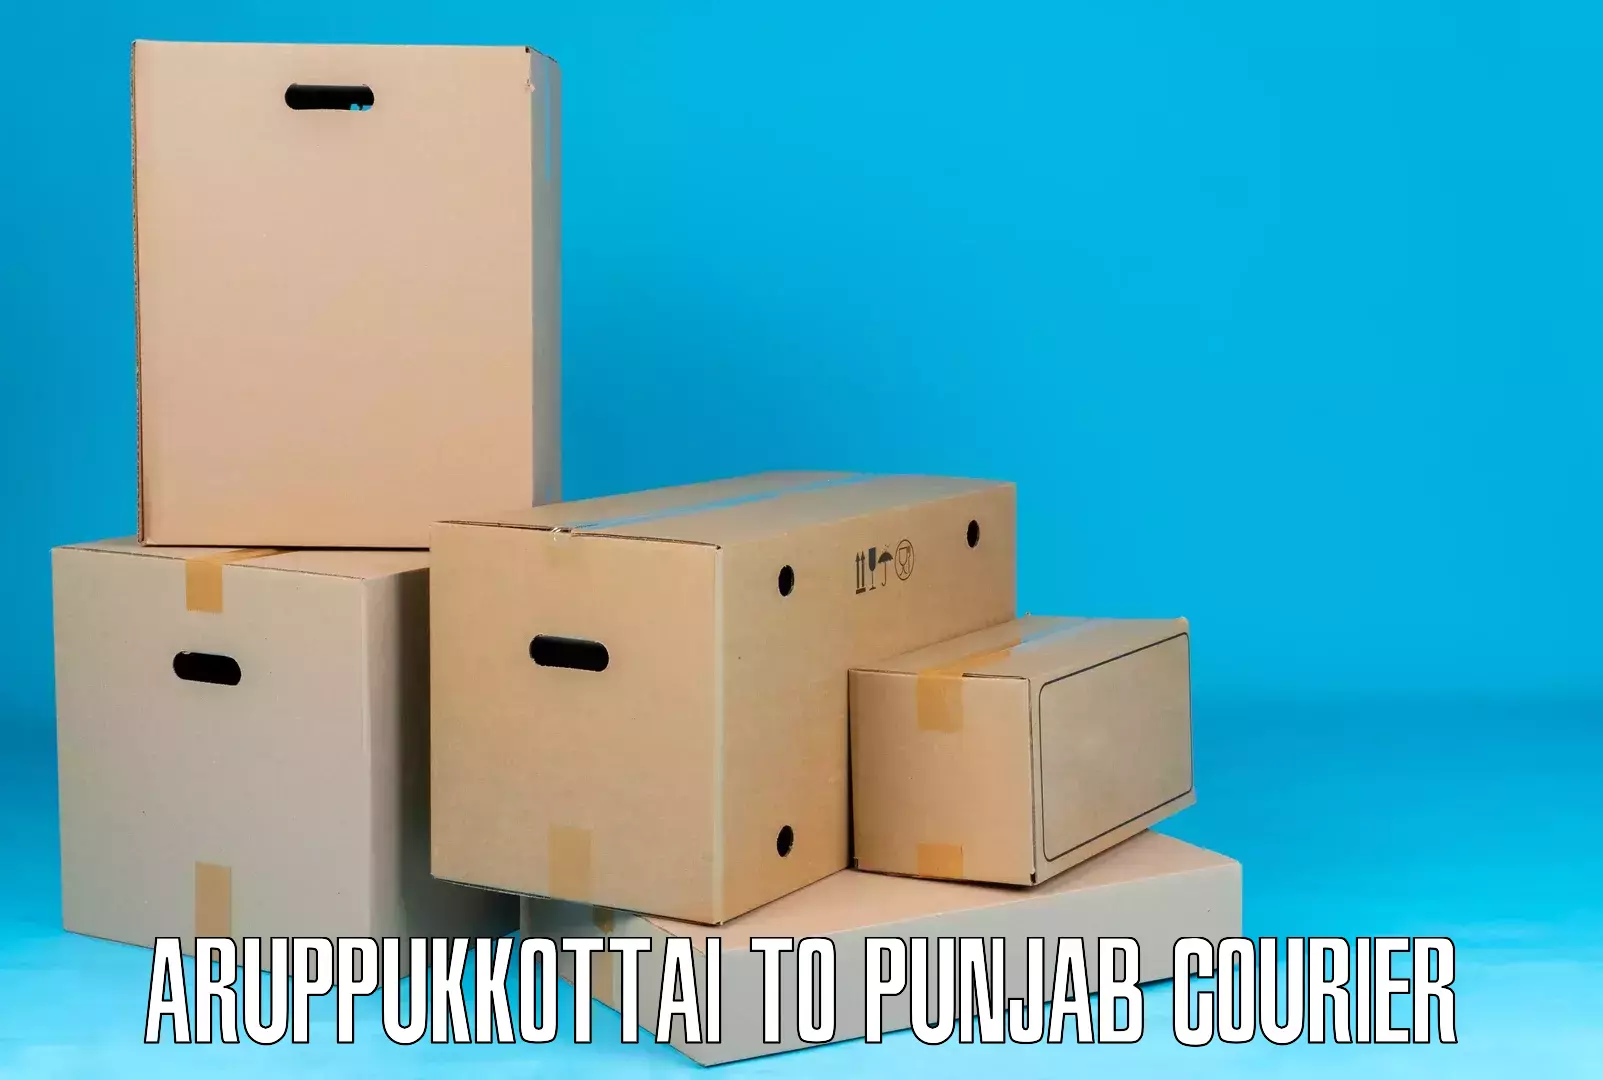 Bulk order courier Aruppukkottai to Punjab